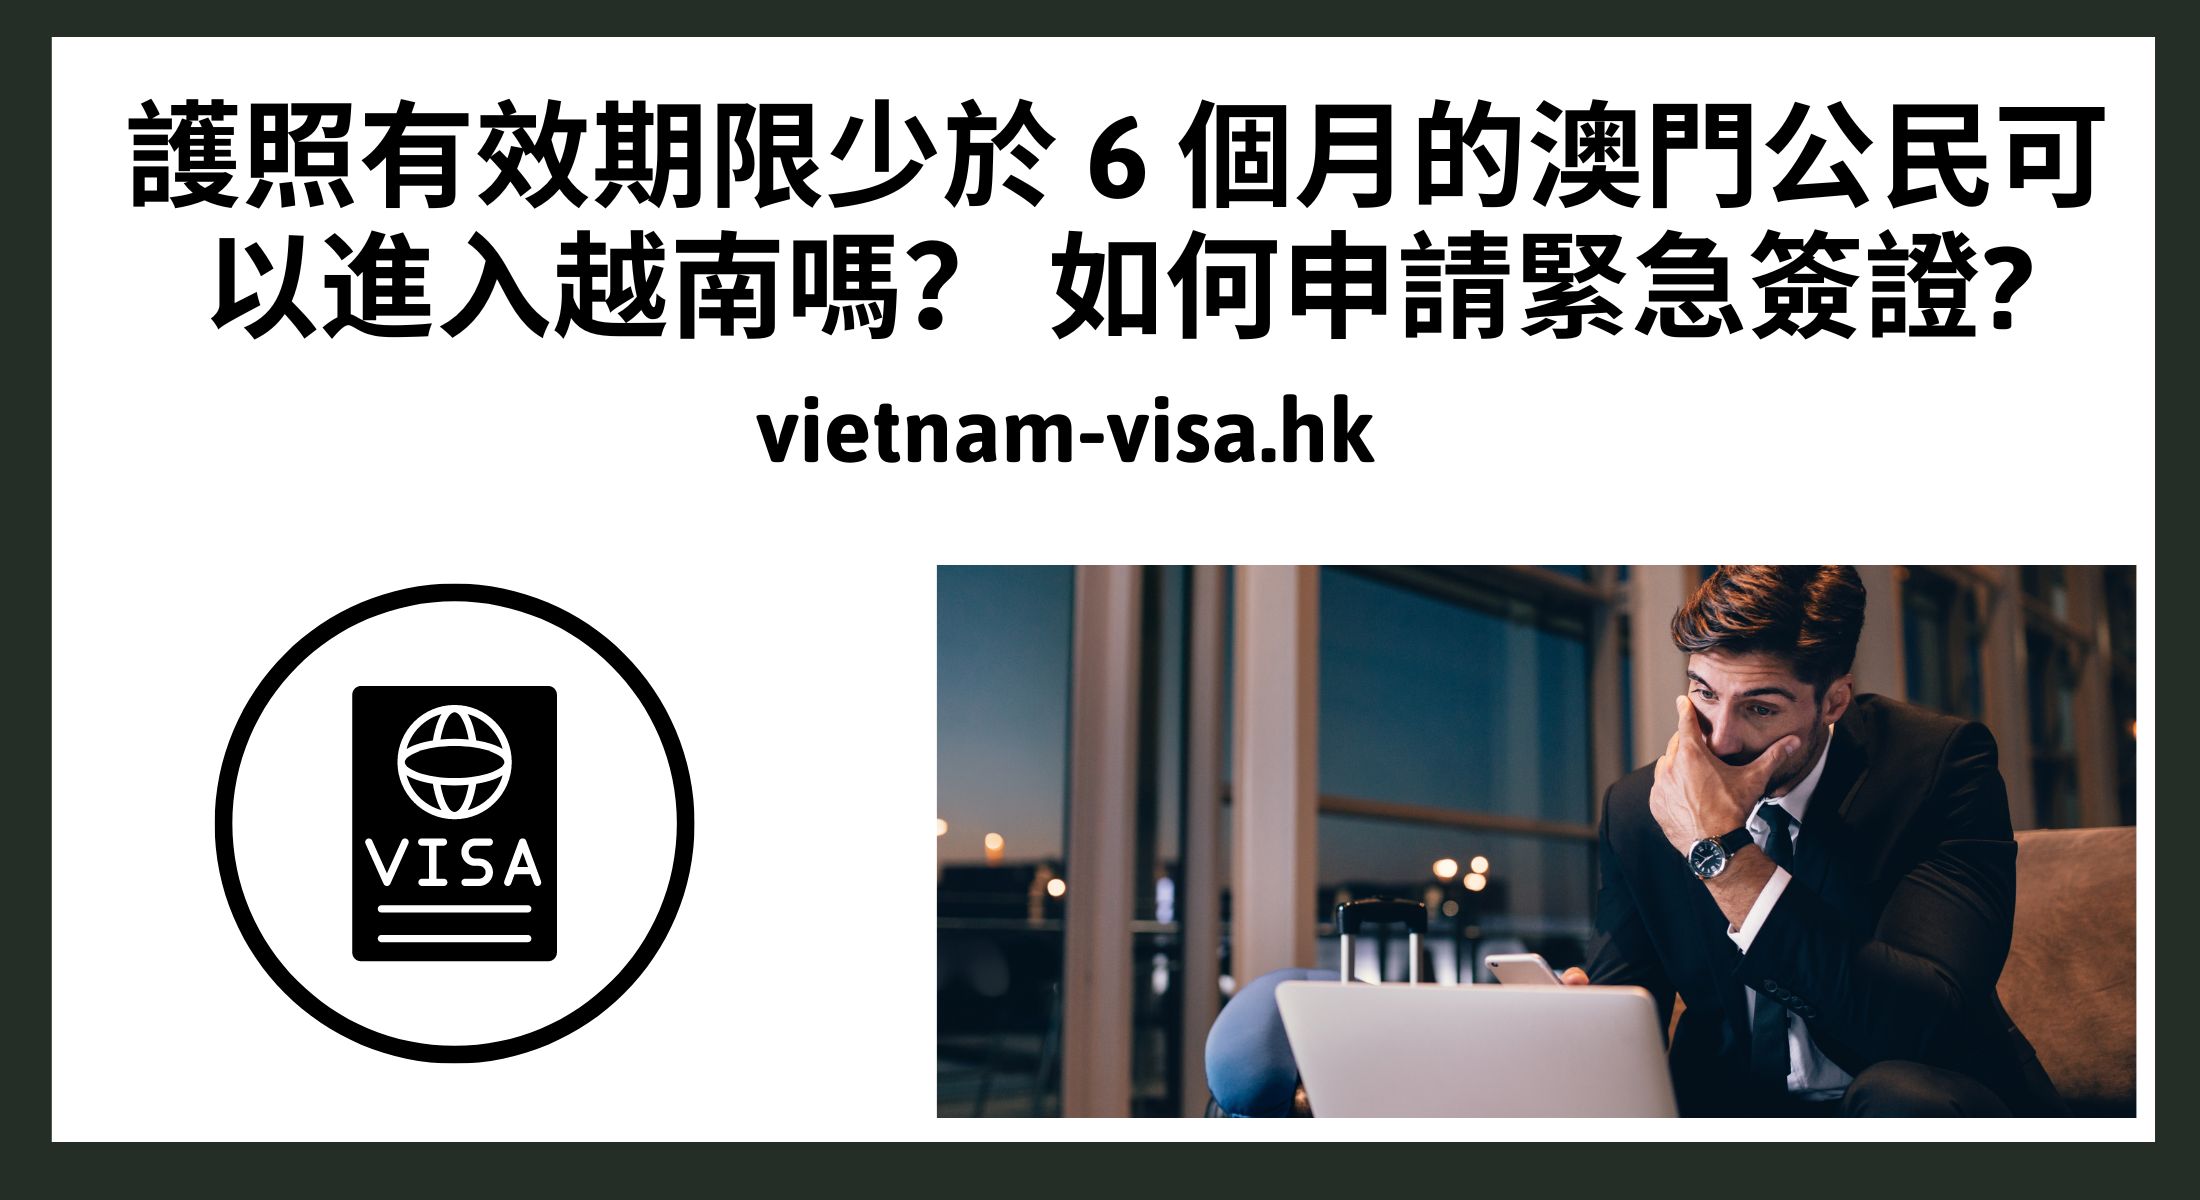 護照有效期限少於 6 個月的澳門公民可以進入越南嗎？ 如何申請緊急簽證?